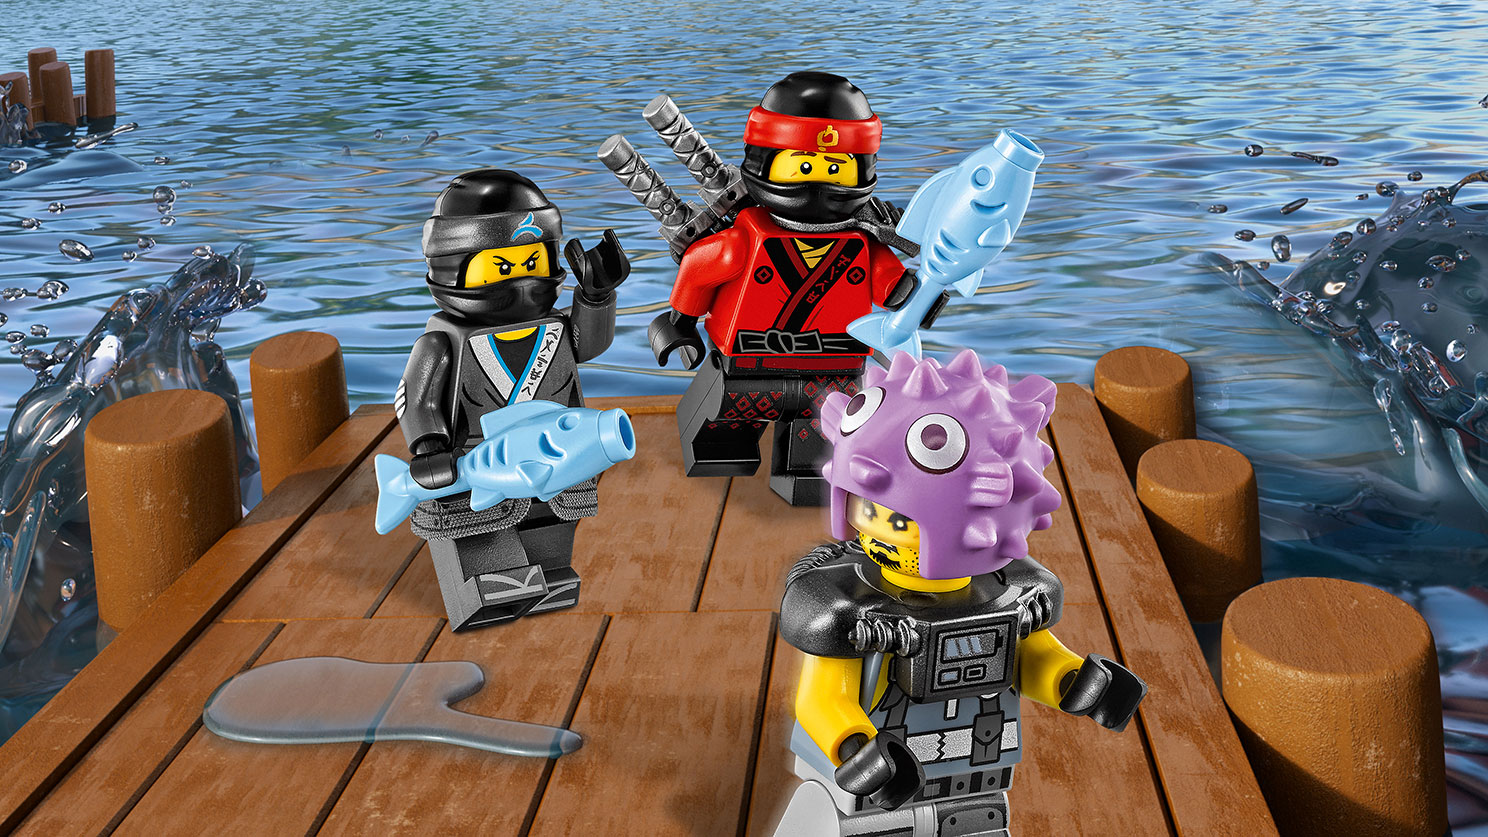 Lego Ninjago. Водяной Робот  